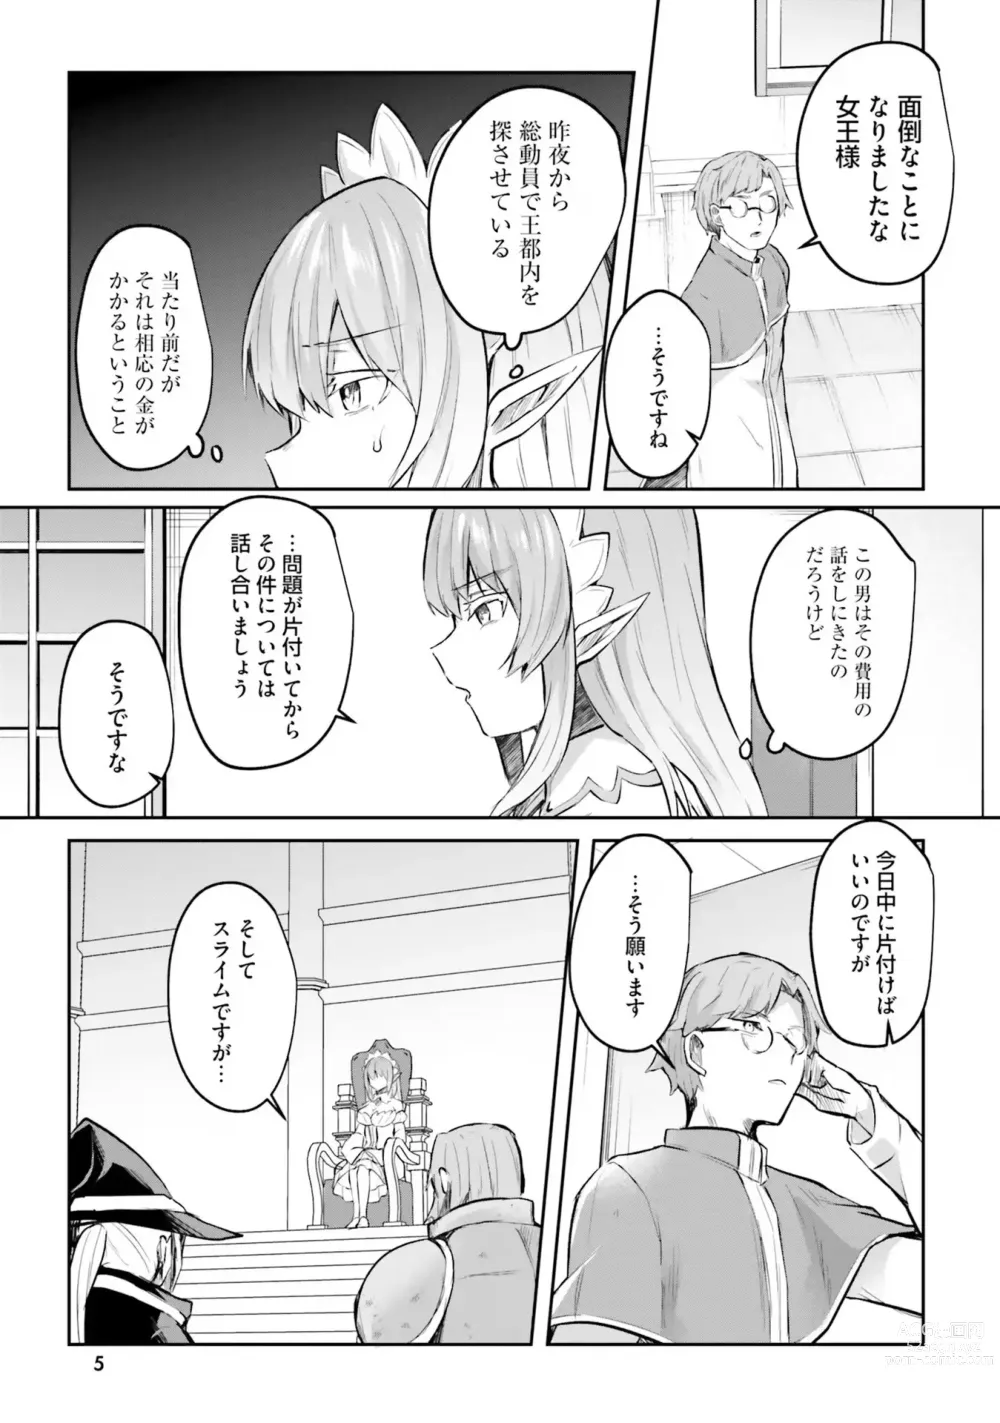 Page 7 of manga Inbi na Doukutsu no Sono Oku de 4